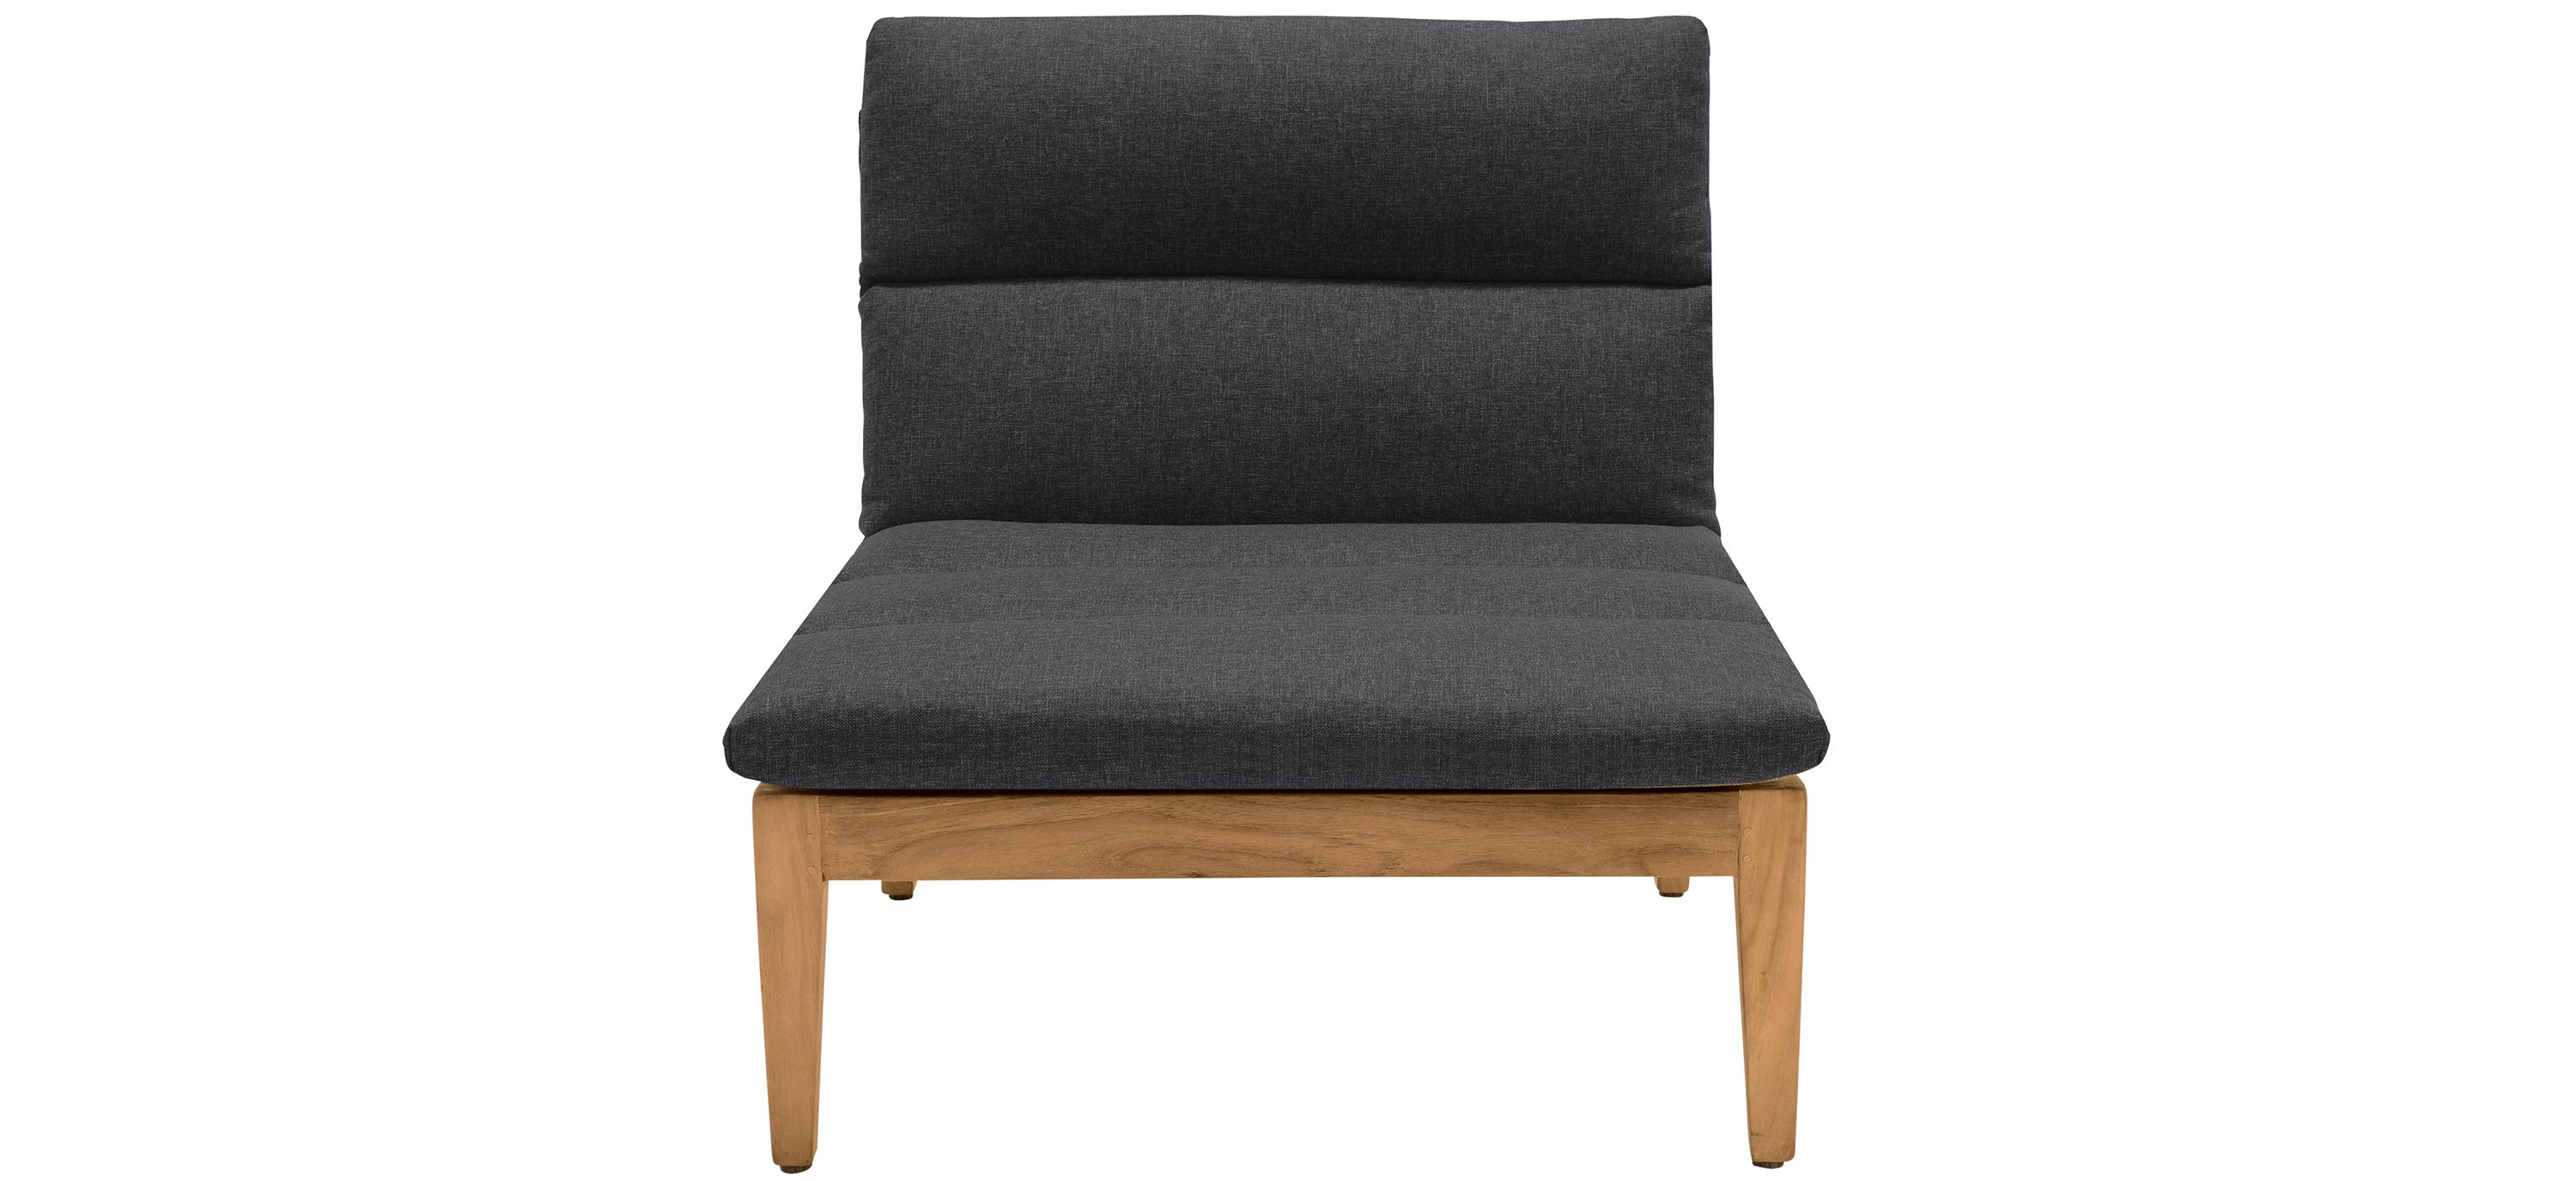 Arno Outdoor Modular Teak Wood Lounge Chair